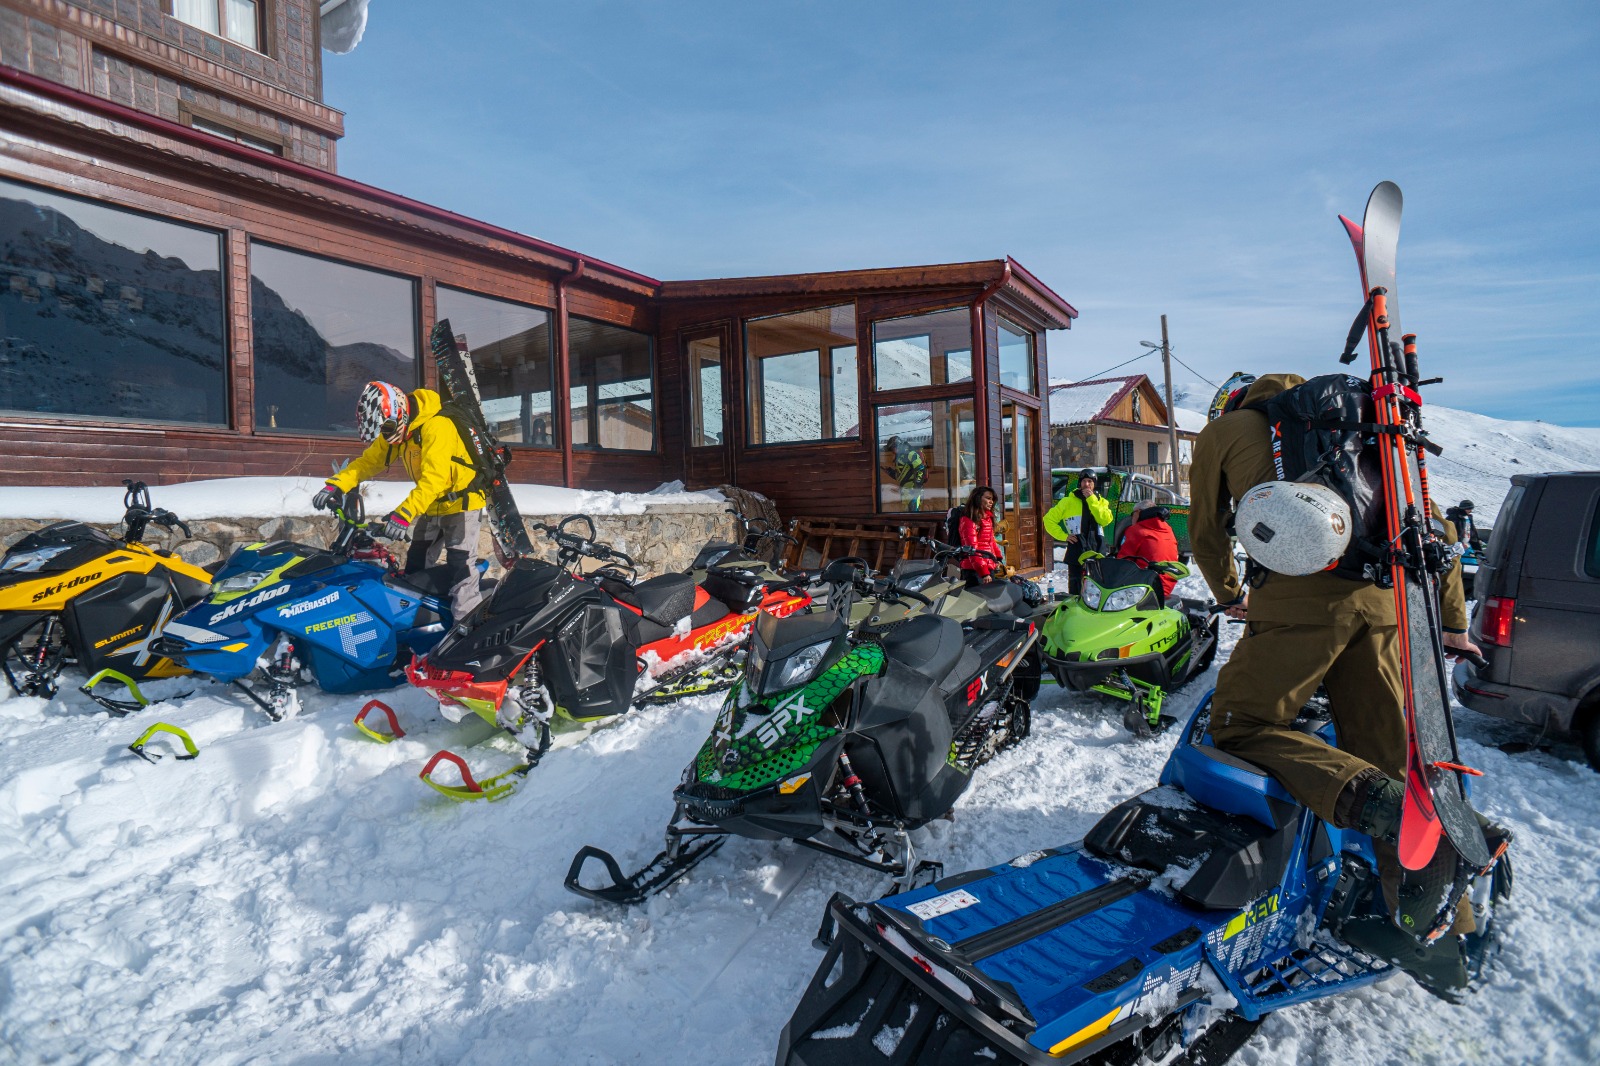 Ovit Butik Hotel Ski-doo inventory, Ovit Mountain